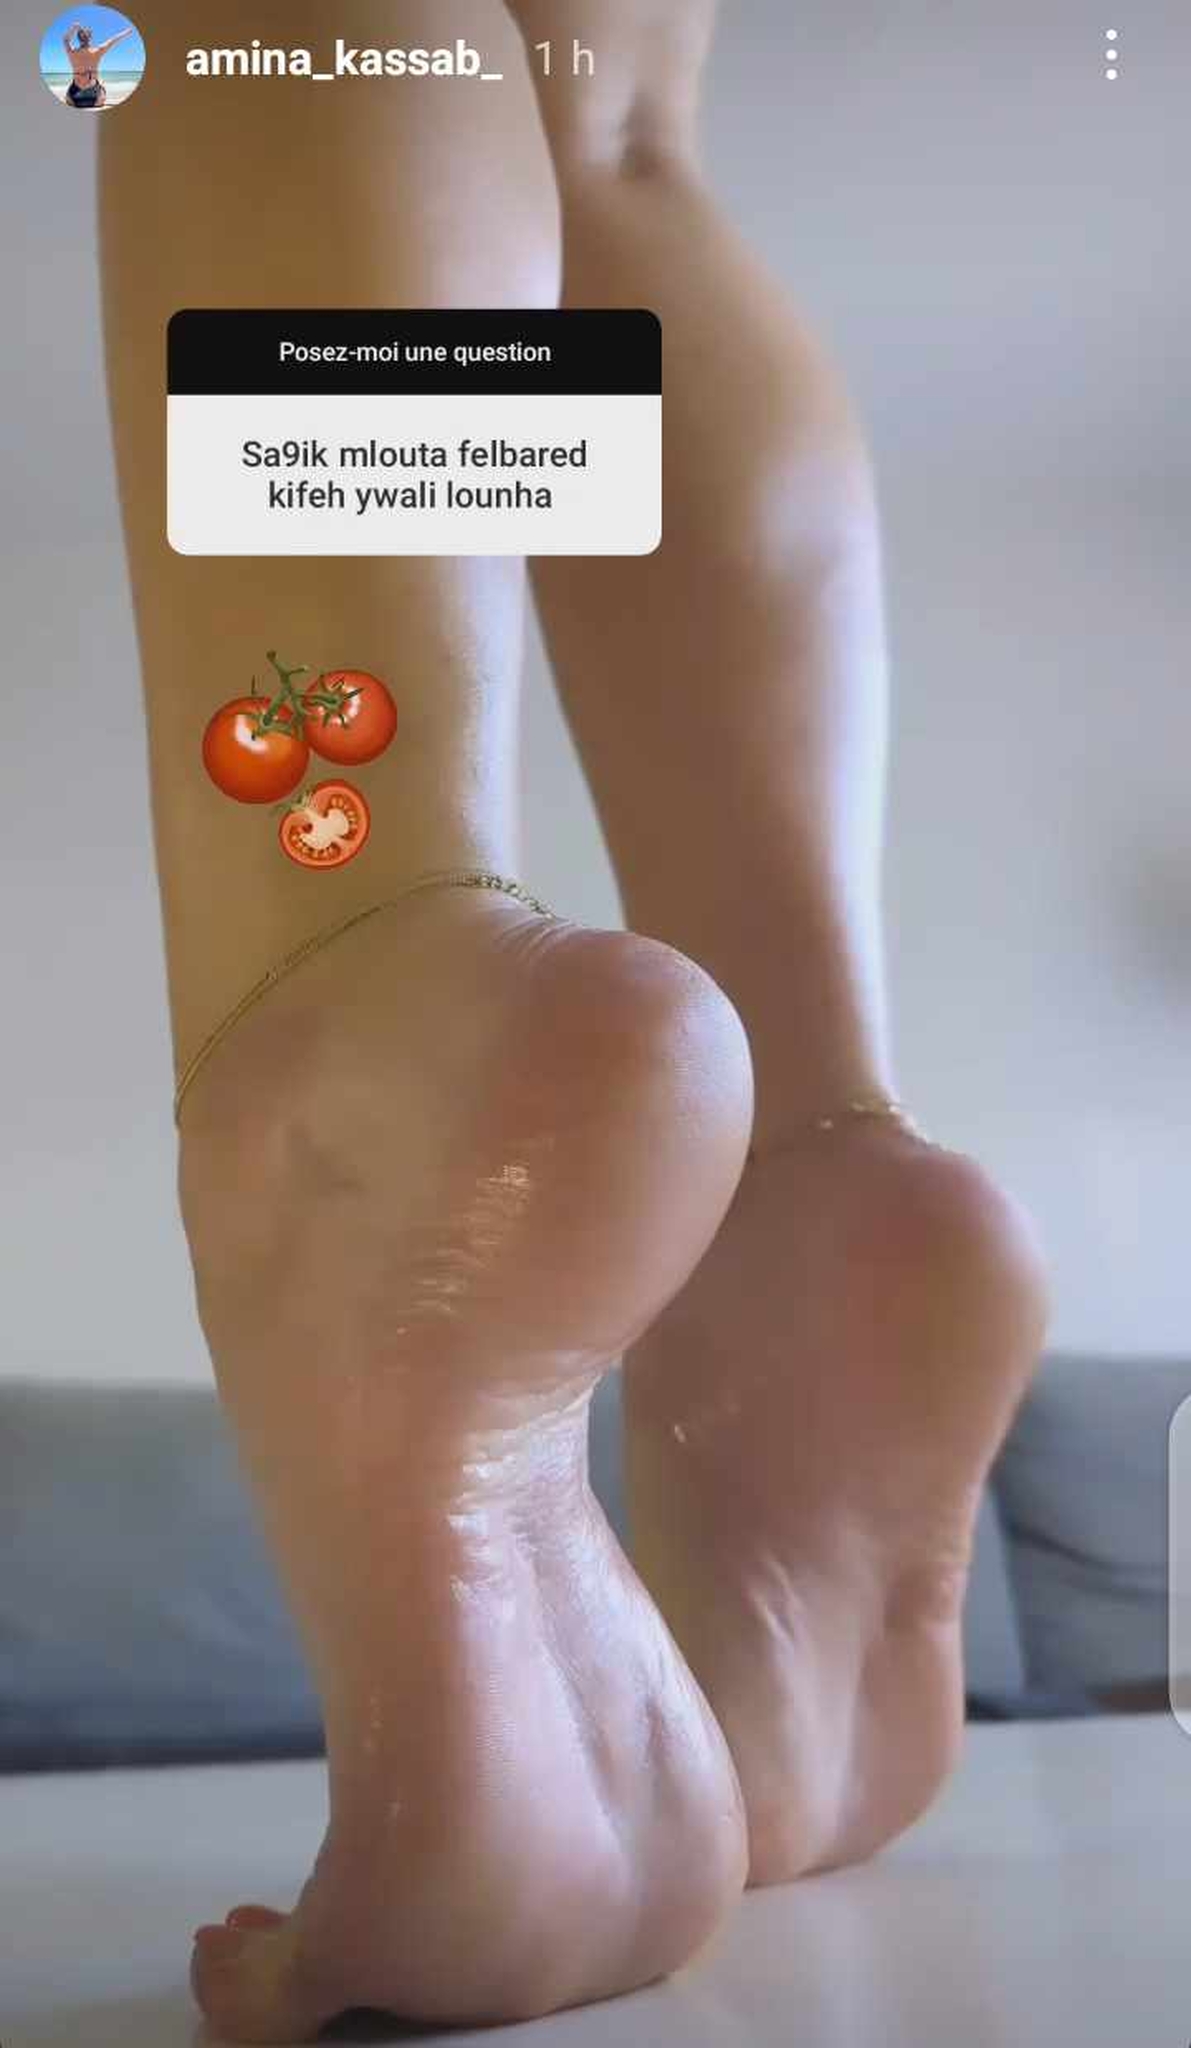 delicious feet